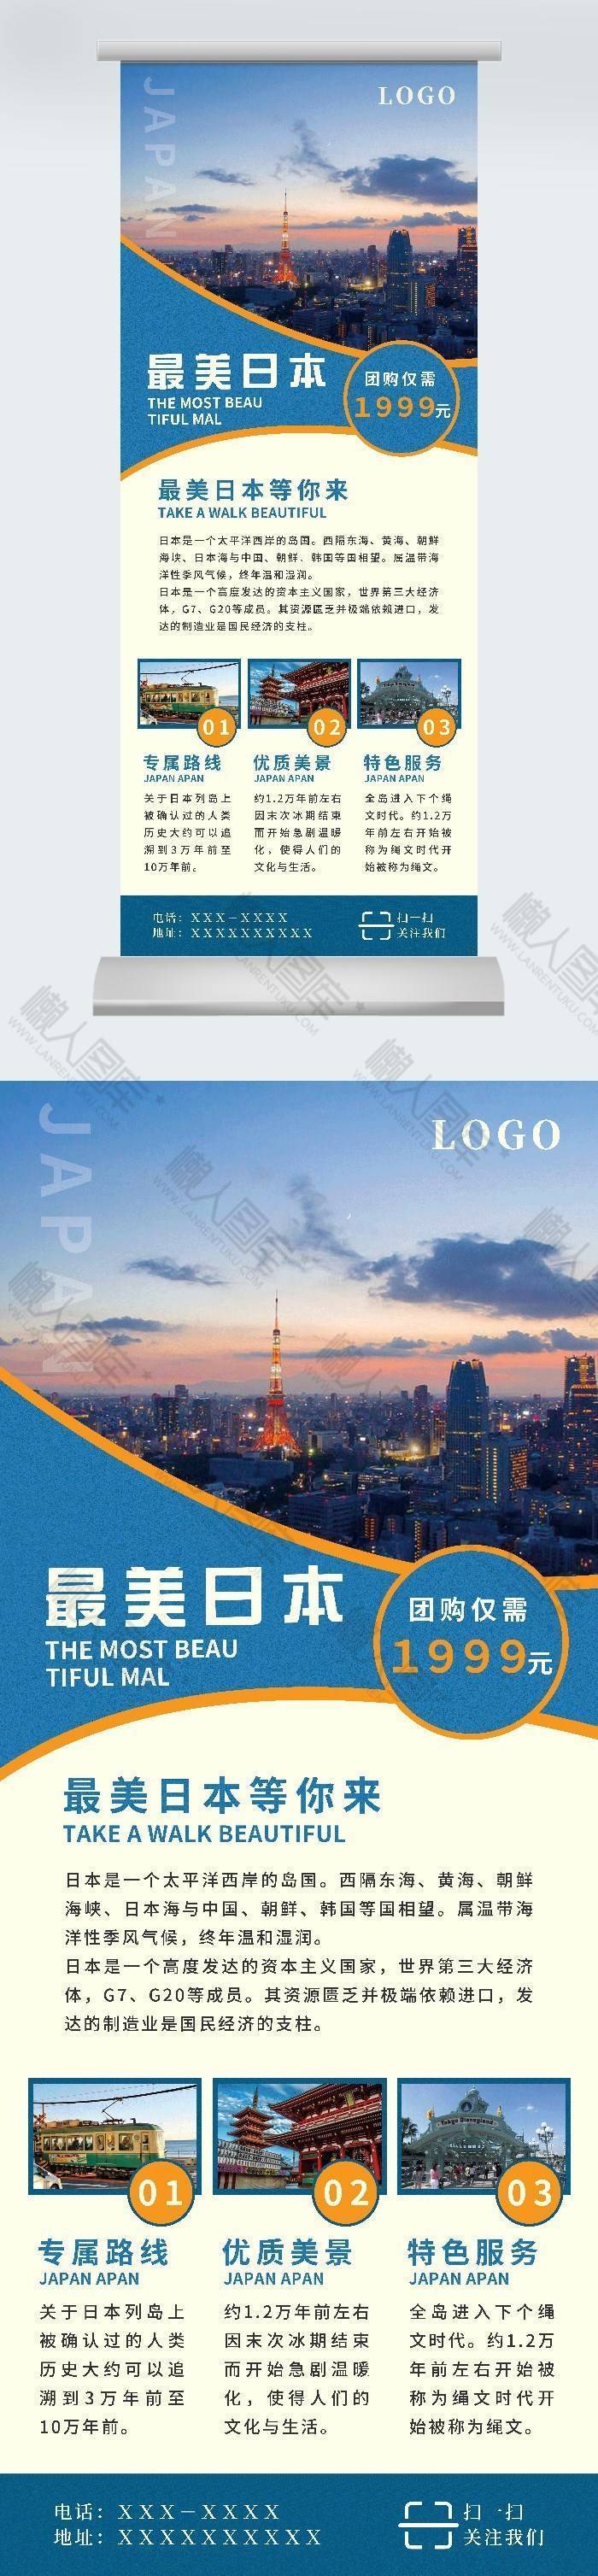 日本旅行广告平面易拉宝